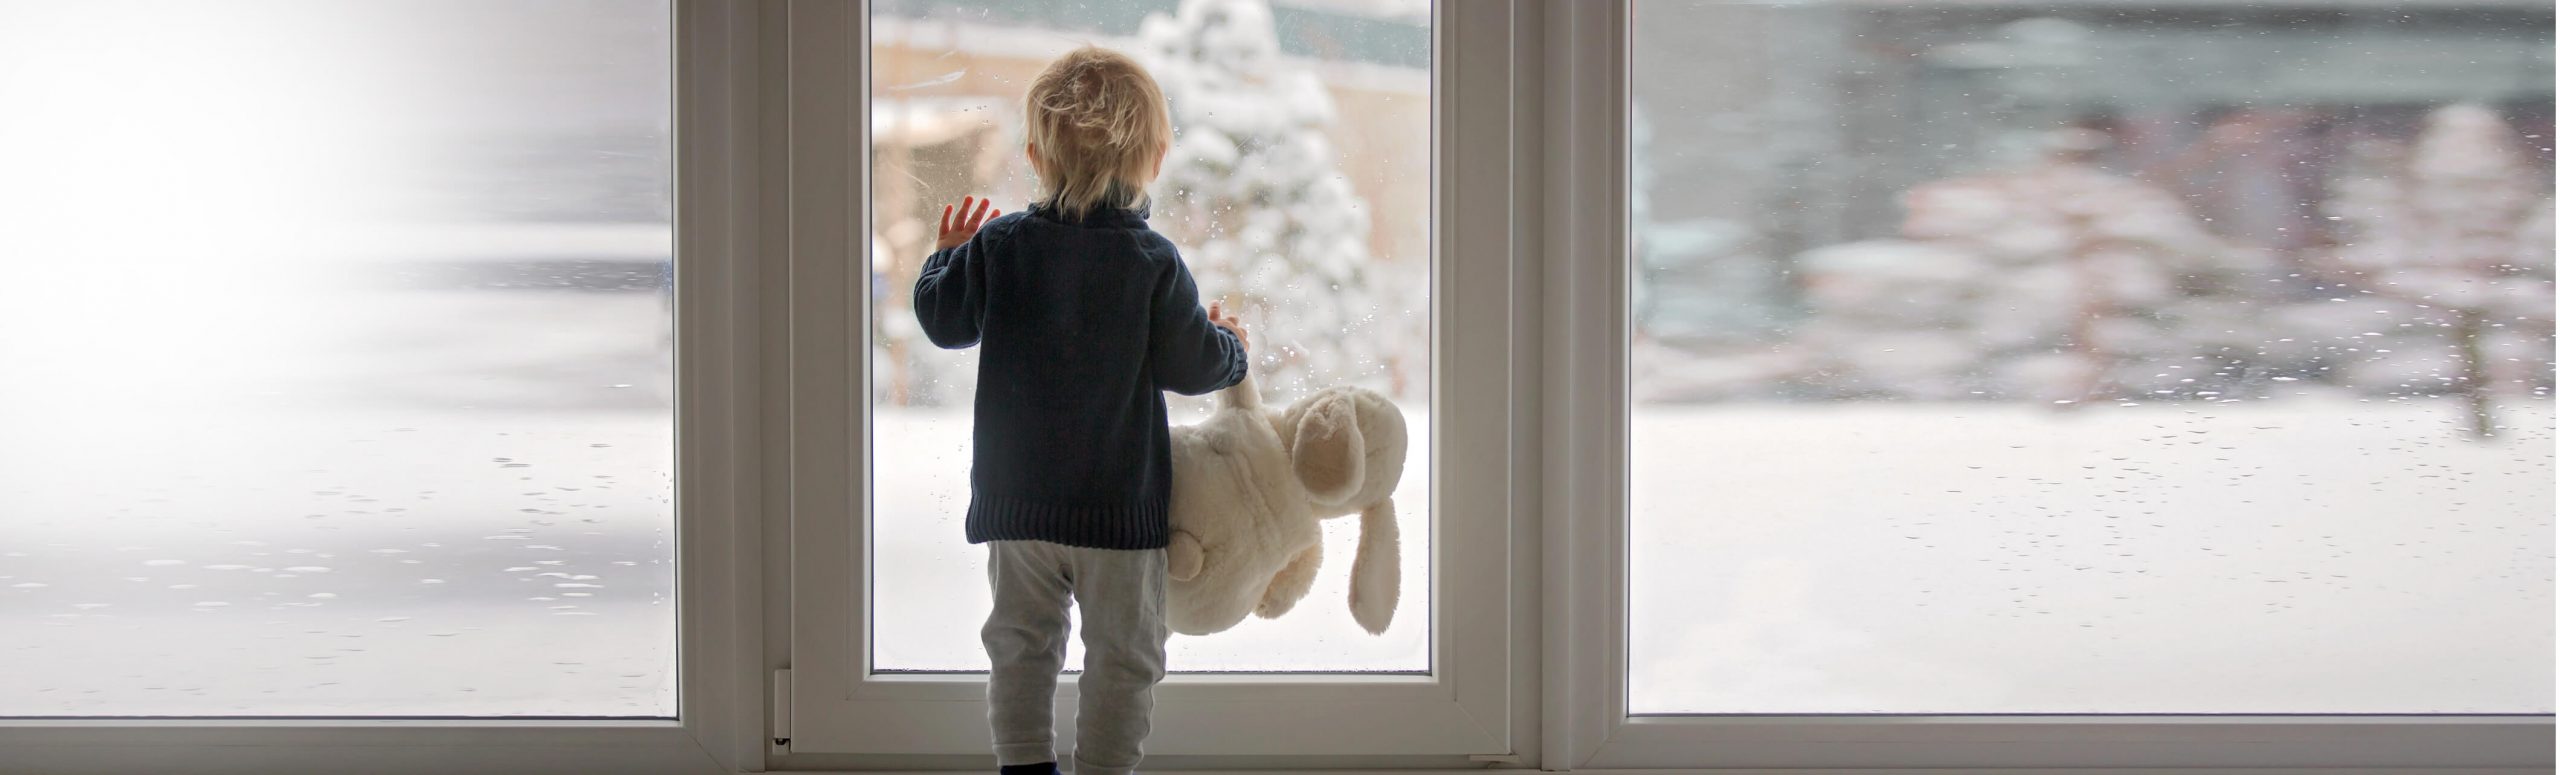 蹒跚学步的孩子抱着泰迪熊看着窗外的雪